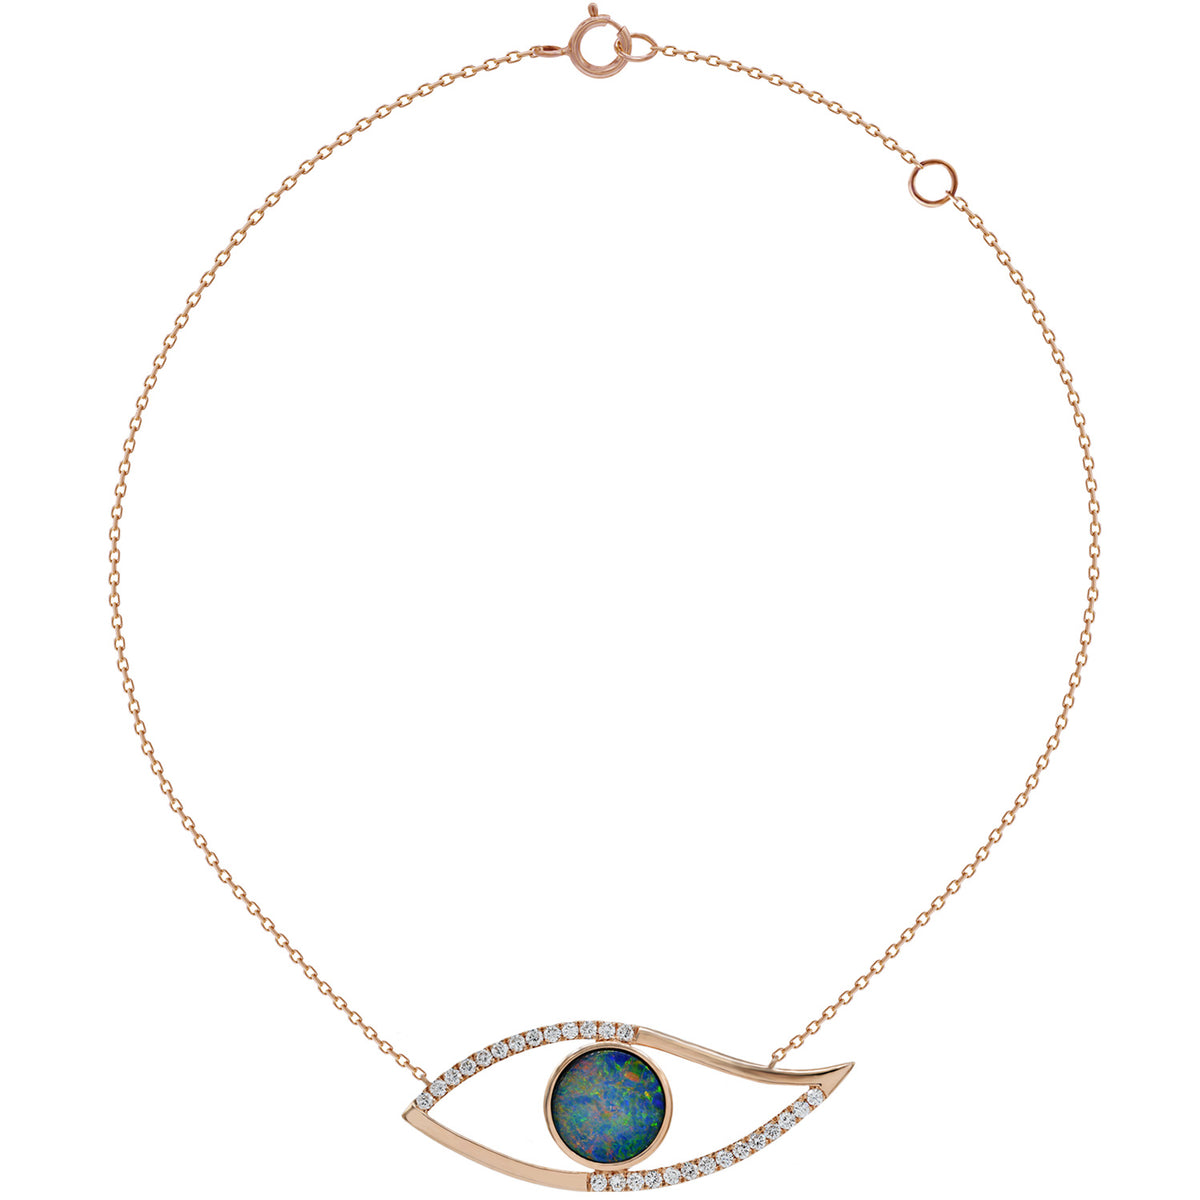 Evil eye necklace. Diamond evil eye necklace. Opal eye necklace. Rose gold evil eye necklace.